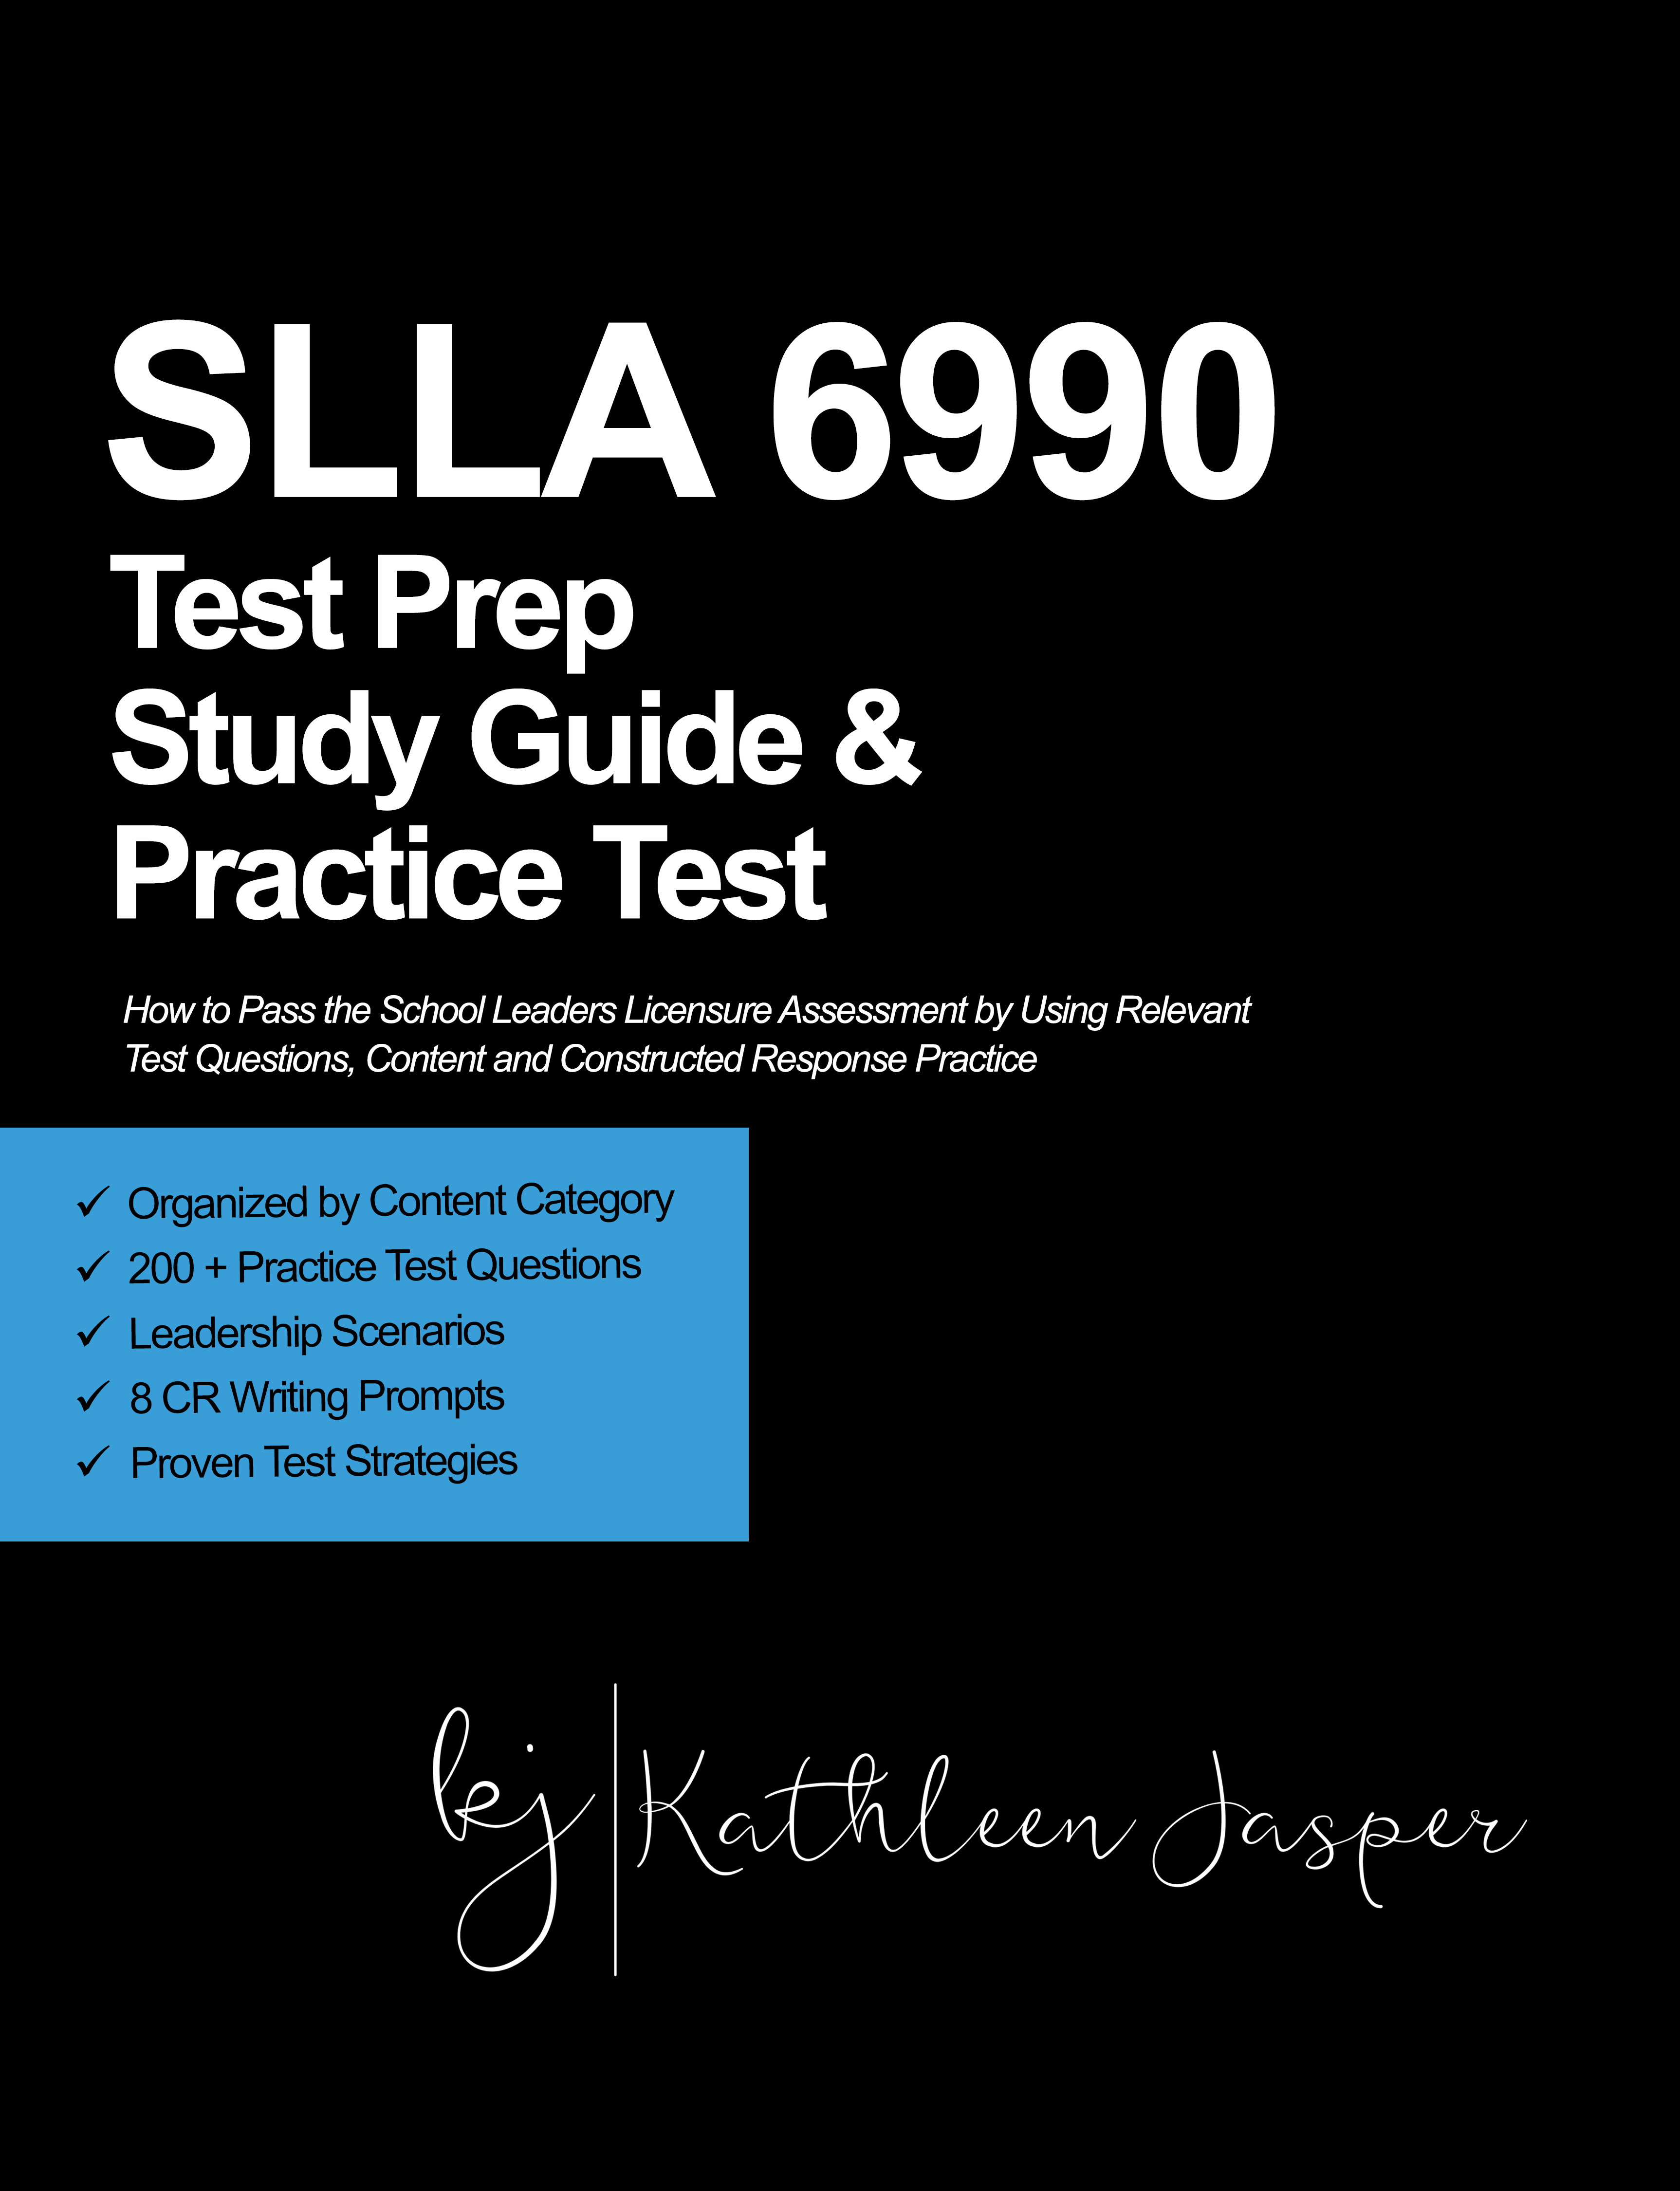 SLLA 6990 Study Guide